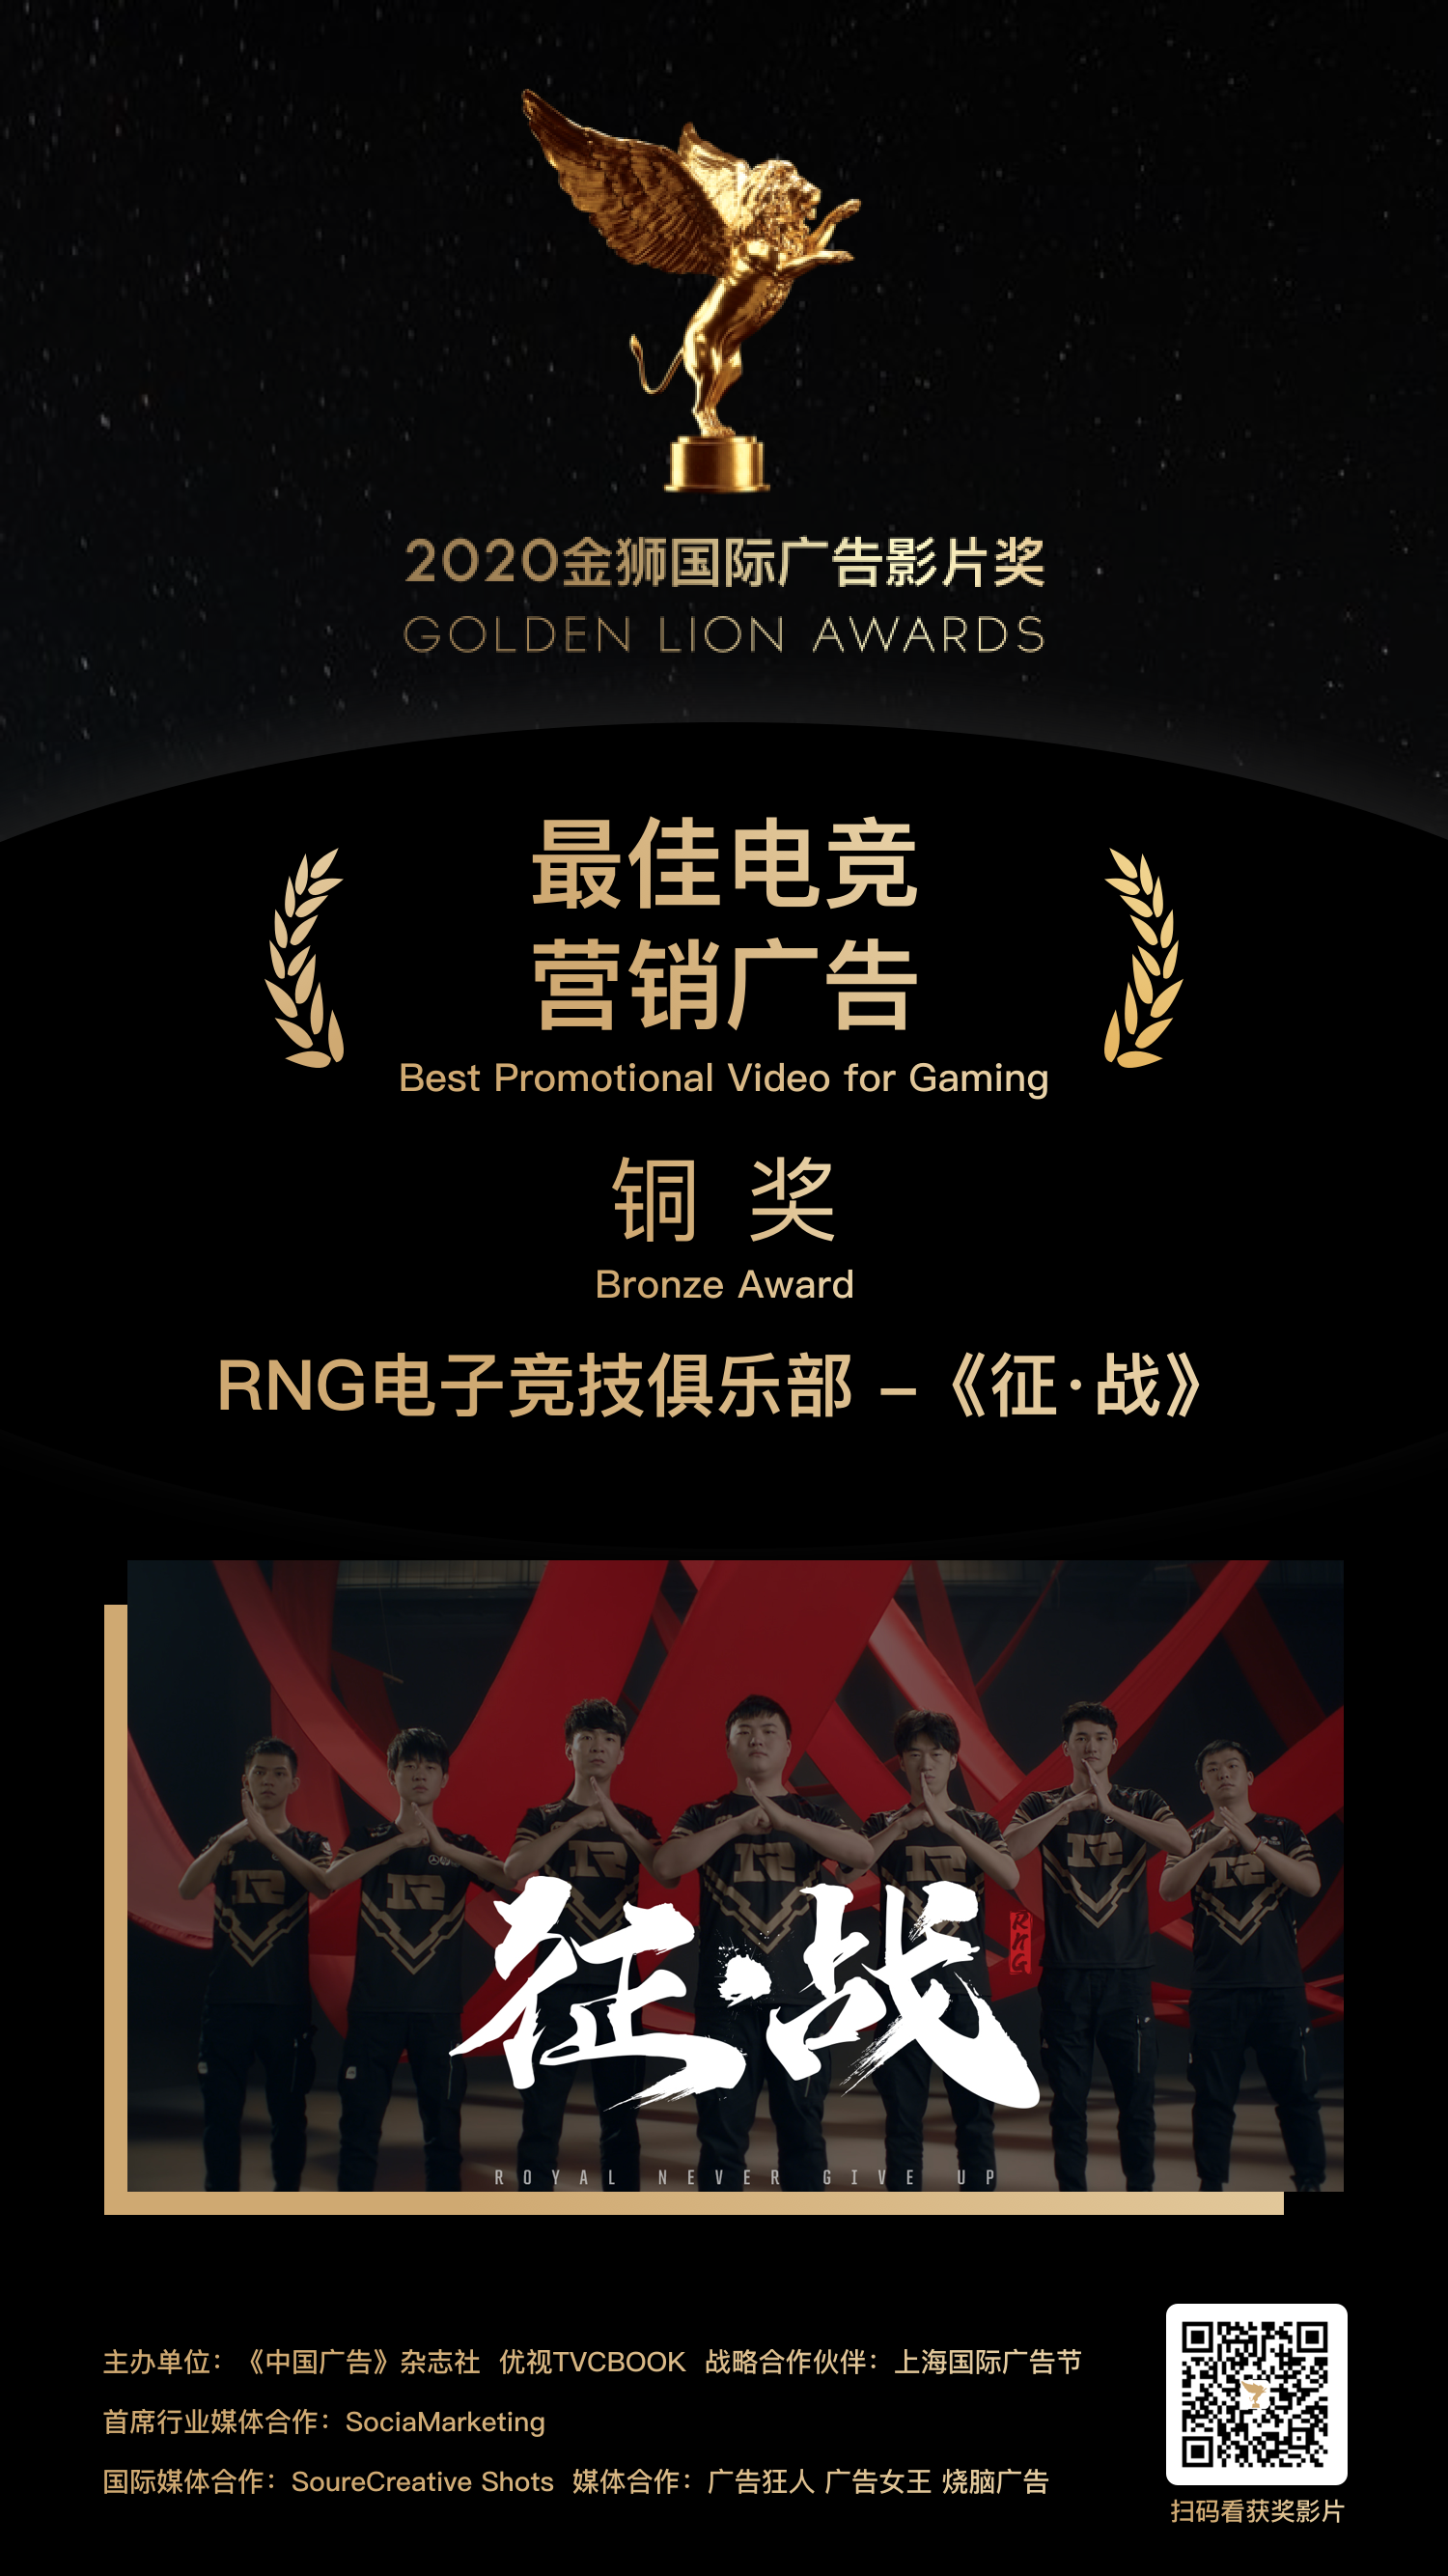 铜奖-RNG电子竞技俱乐部 - 《征·战》.png